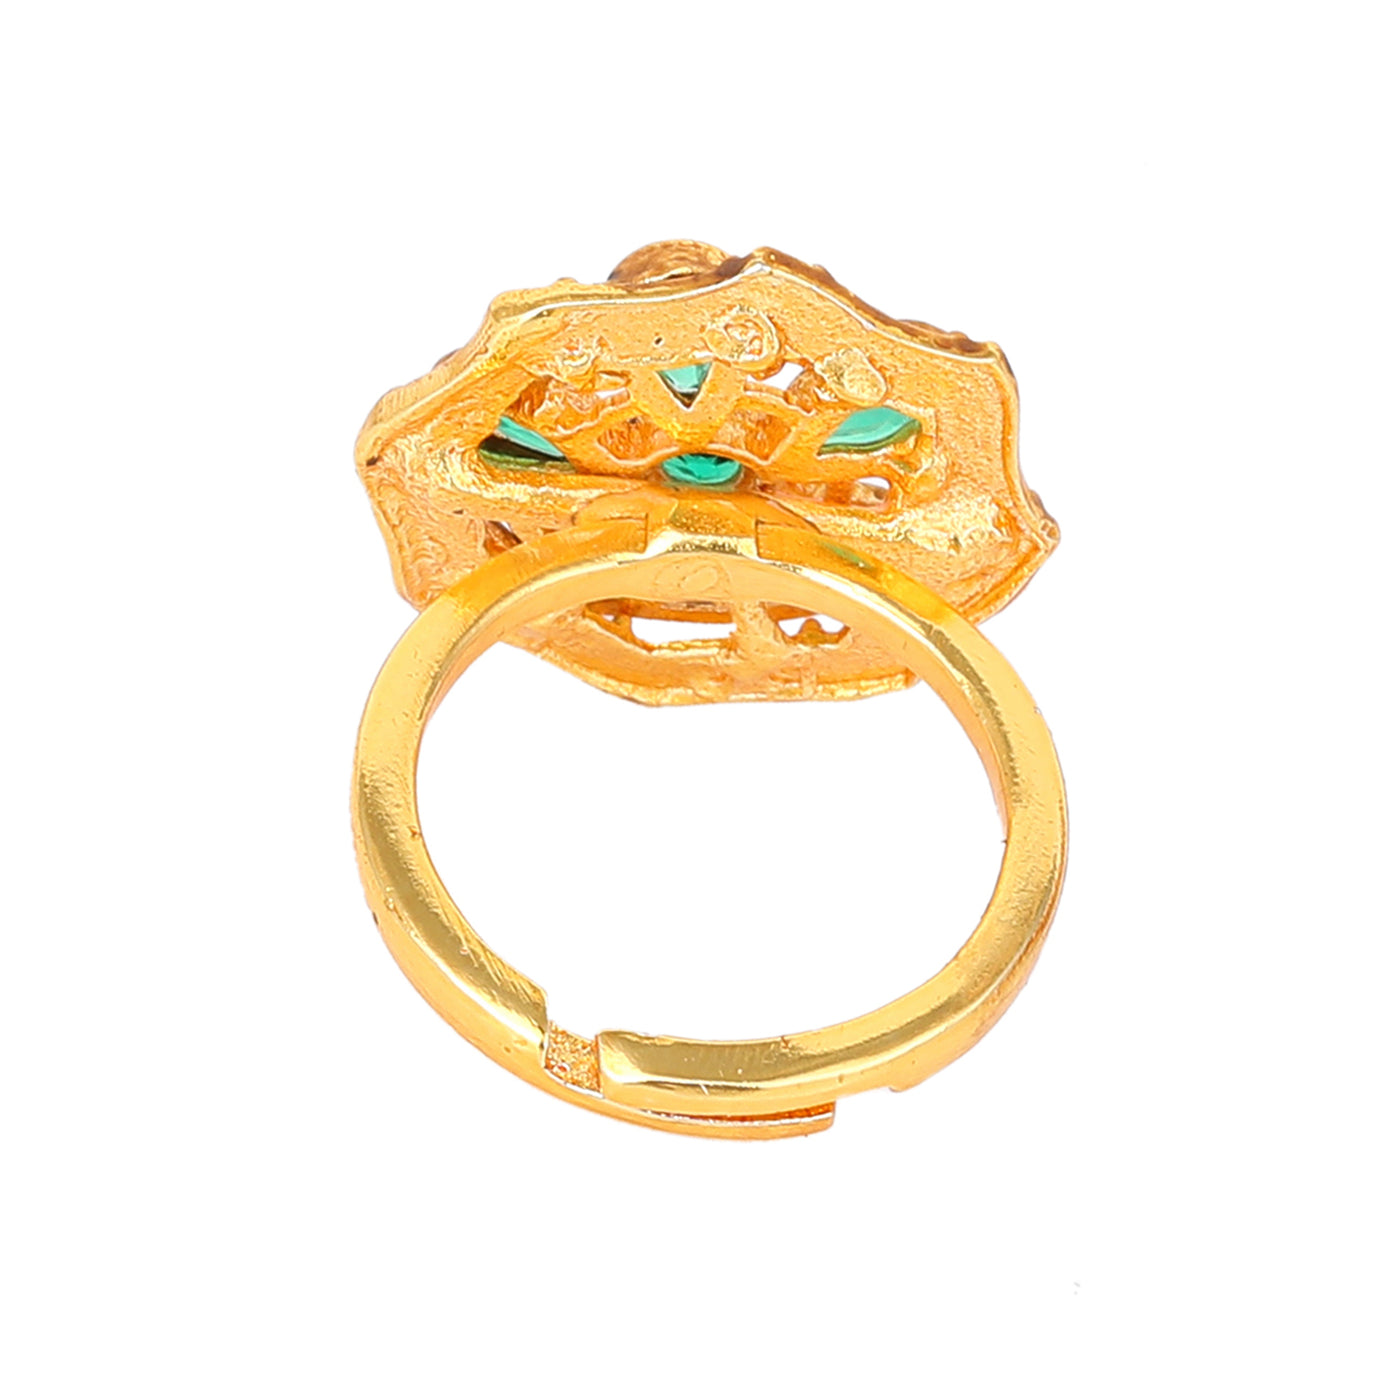 Estele Gold Plated Flower Designer Matte Finish Finger Ring with Green Crystals for Women(Adjustable)